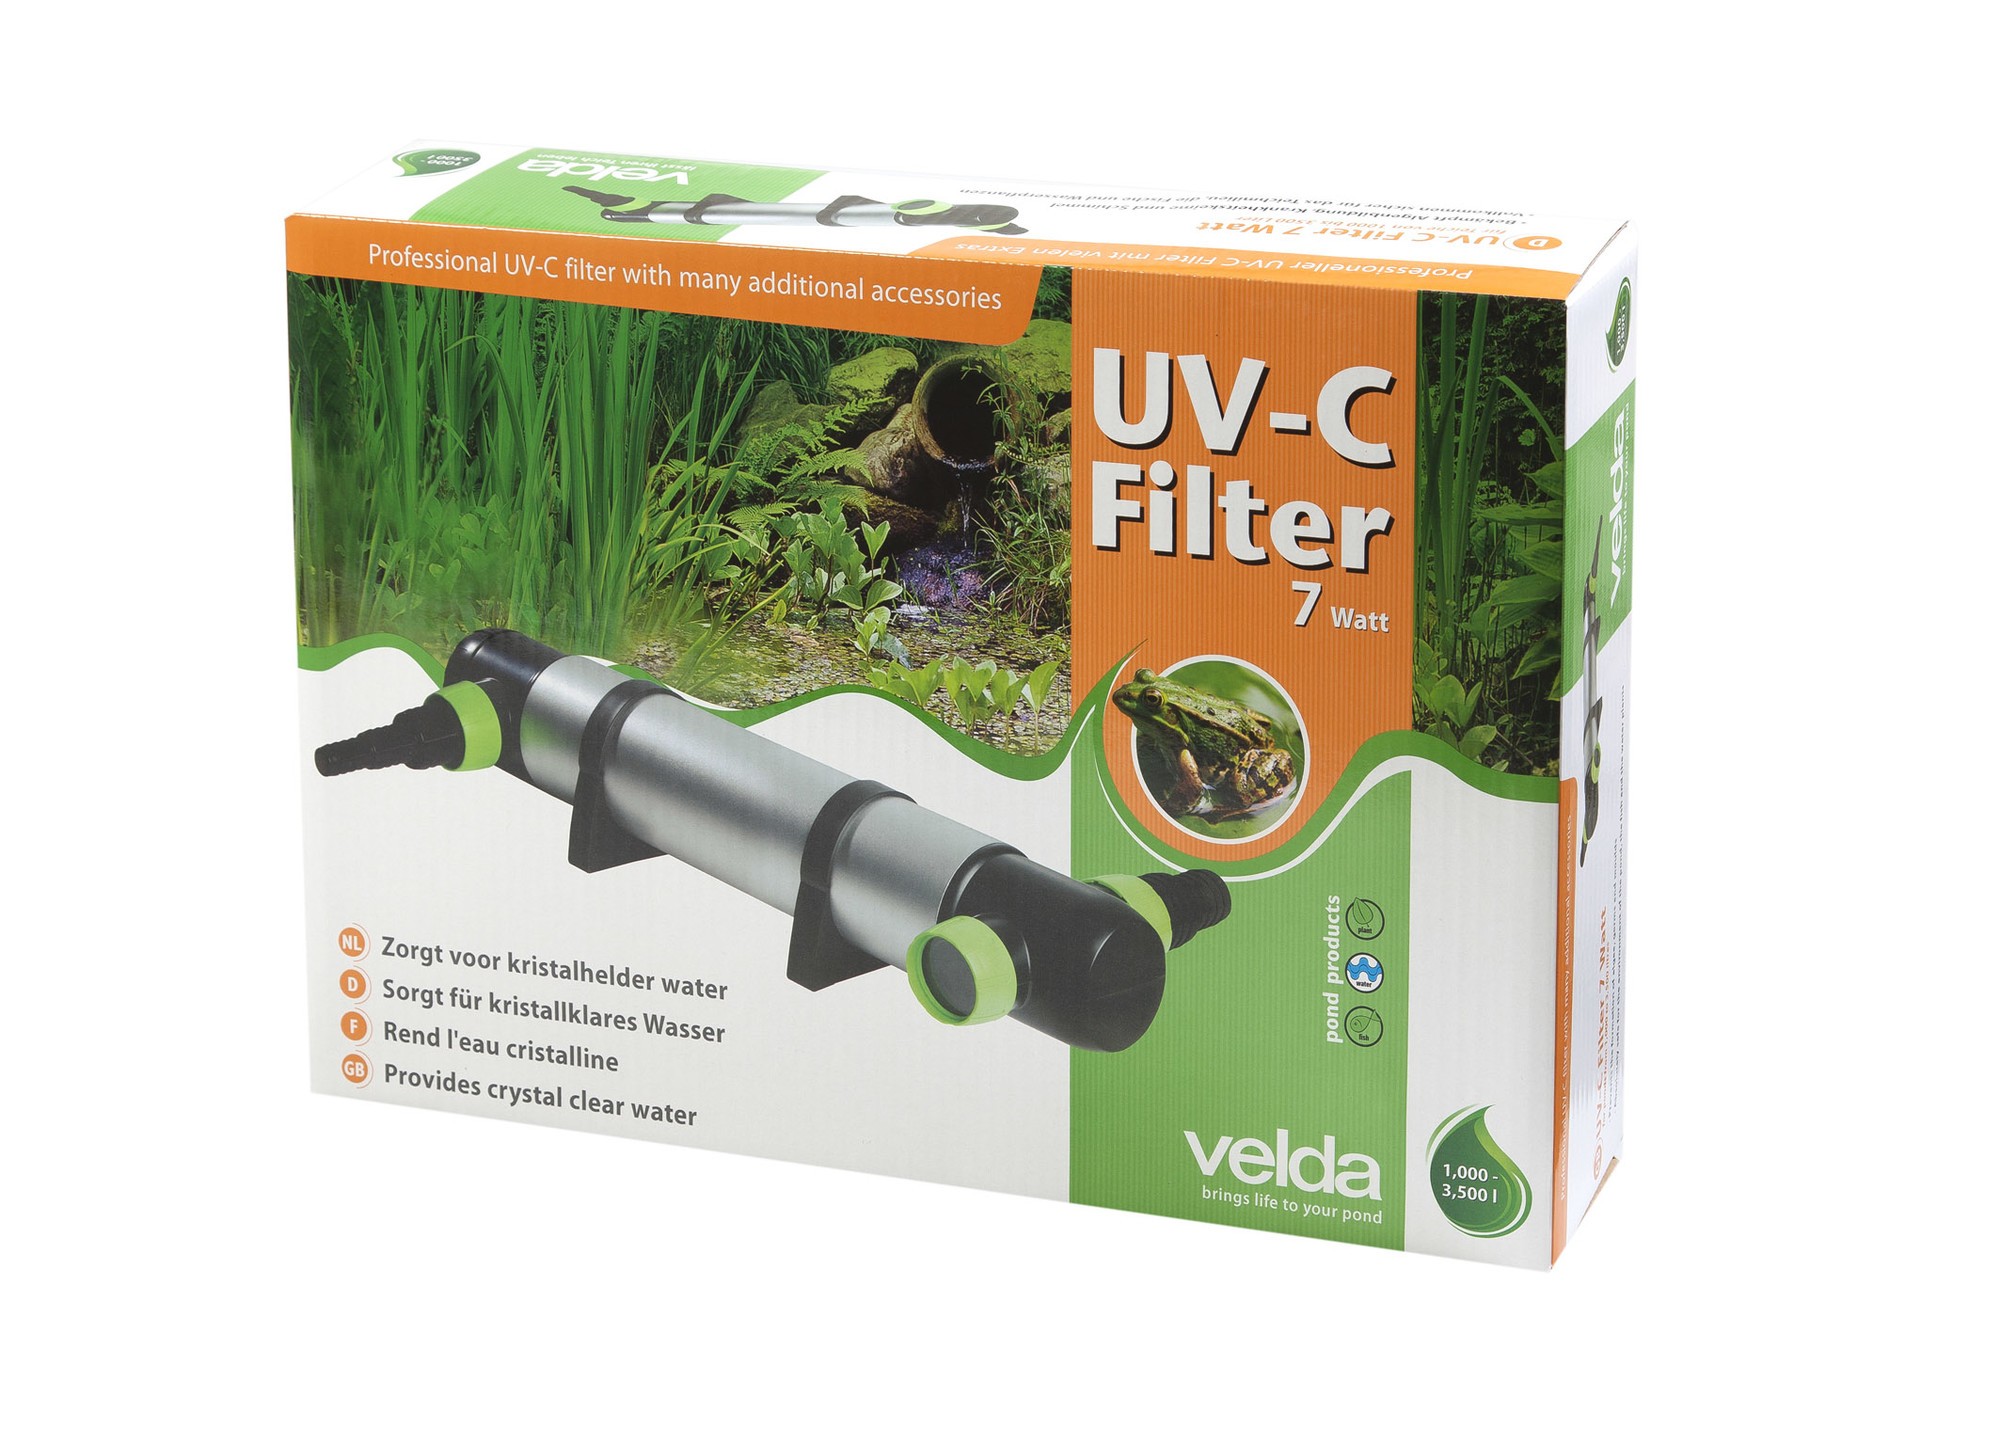 UV-C Filter Professional 7 Watt - Velda